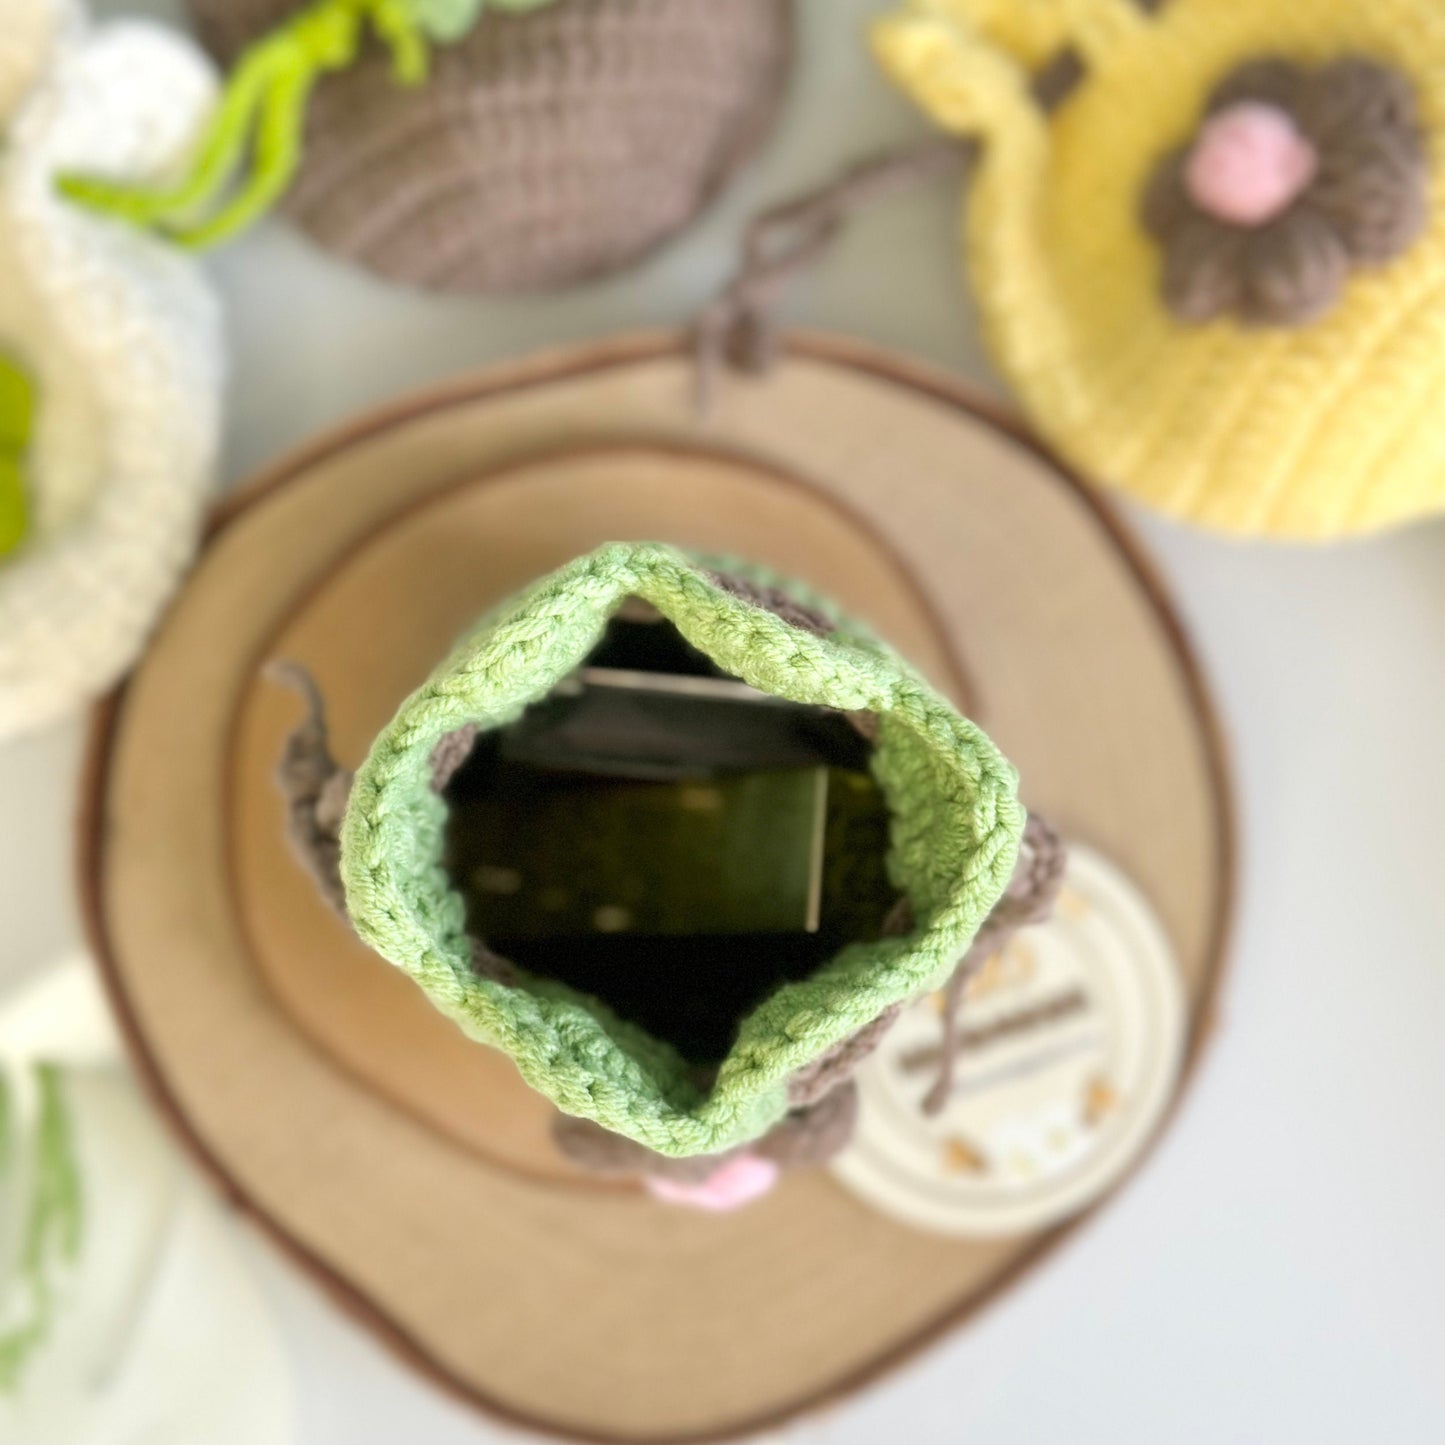 Rio Handmade Flower Pouch, Crochet Flower Pouch, Flower Purse, Cute Mini Coin Bag, Daily Pouch